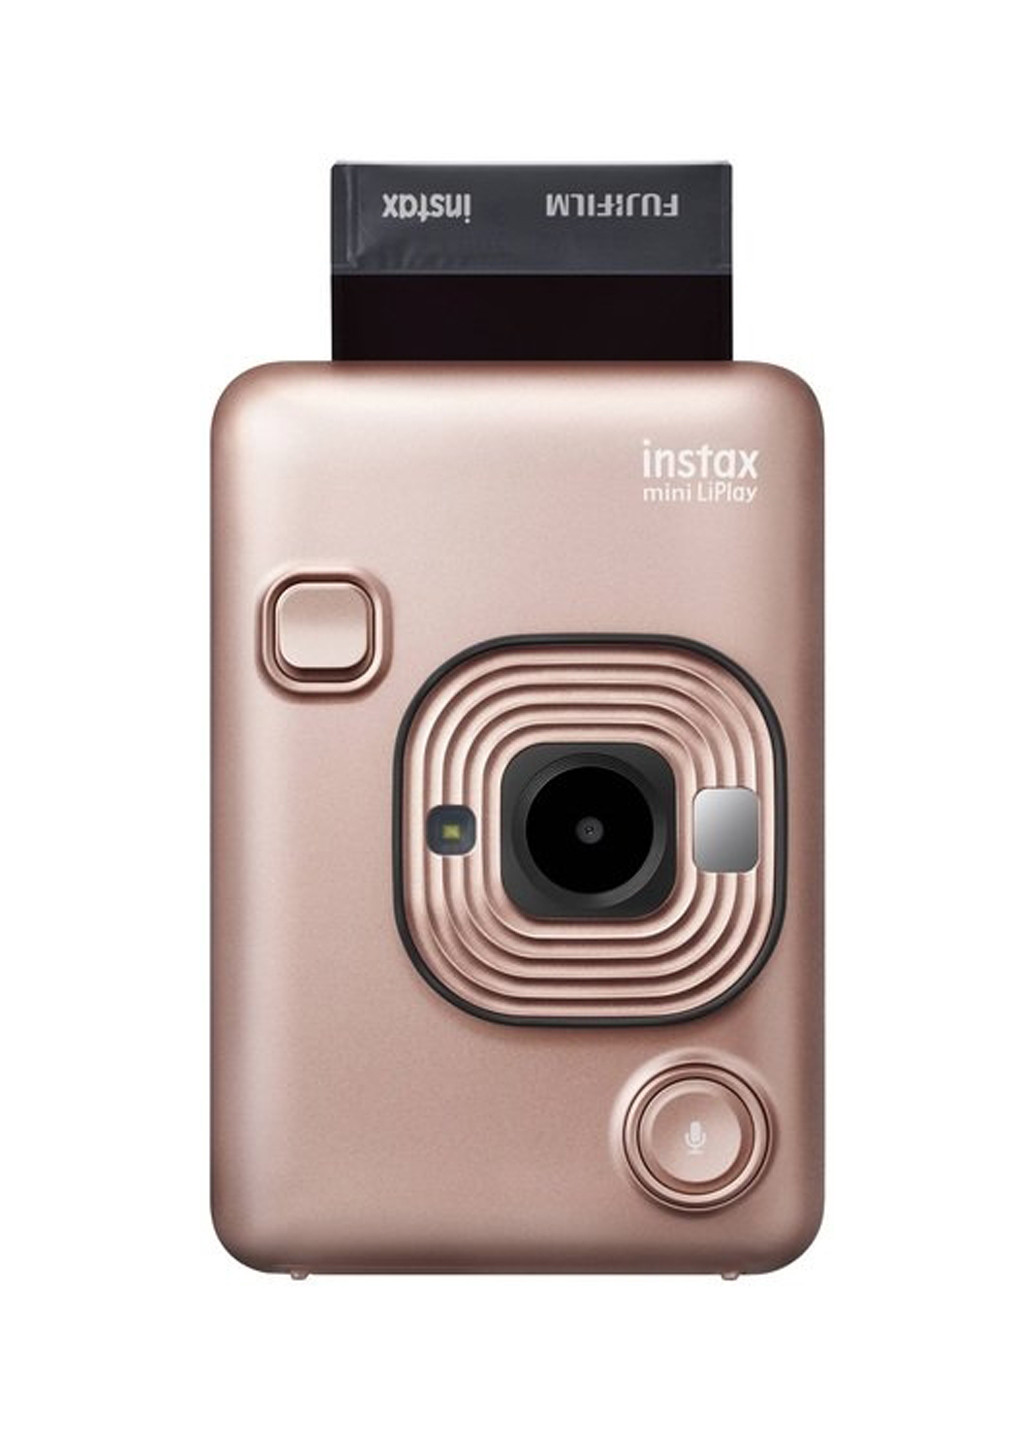 Фотокамера миттєвого друку INSTAX Mini LiPlay Blush Gold Fujifilm моментальной печати instax mini liplay blush gold (151241177)